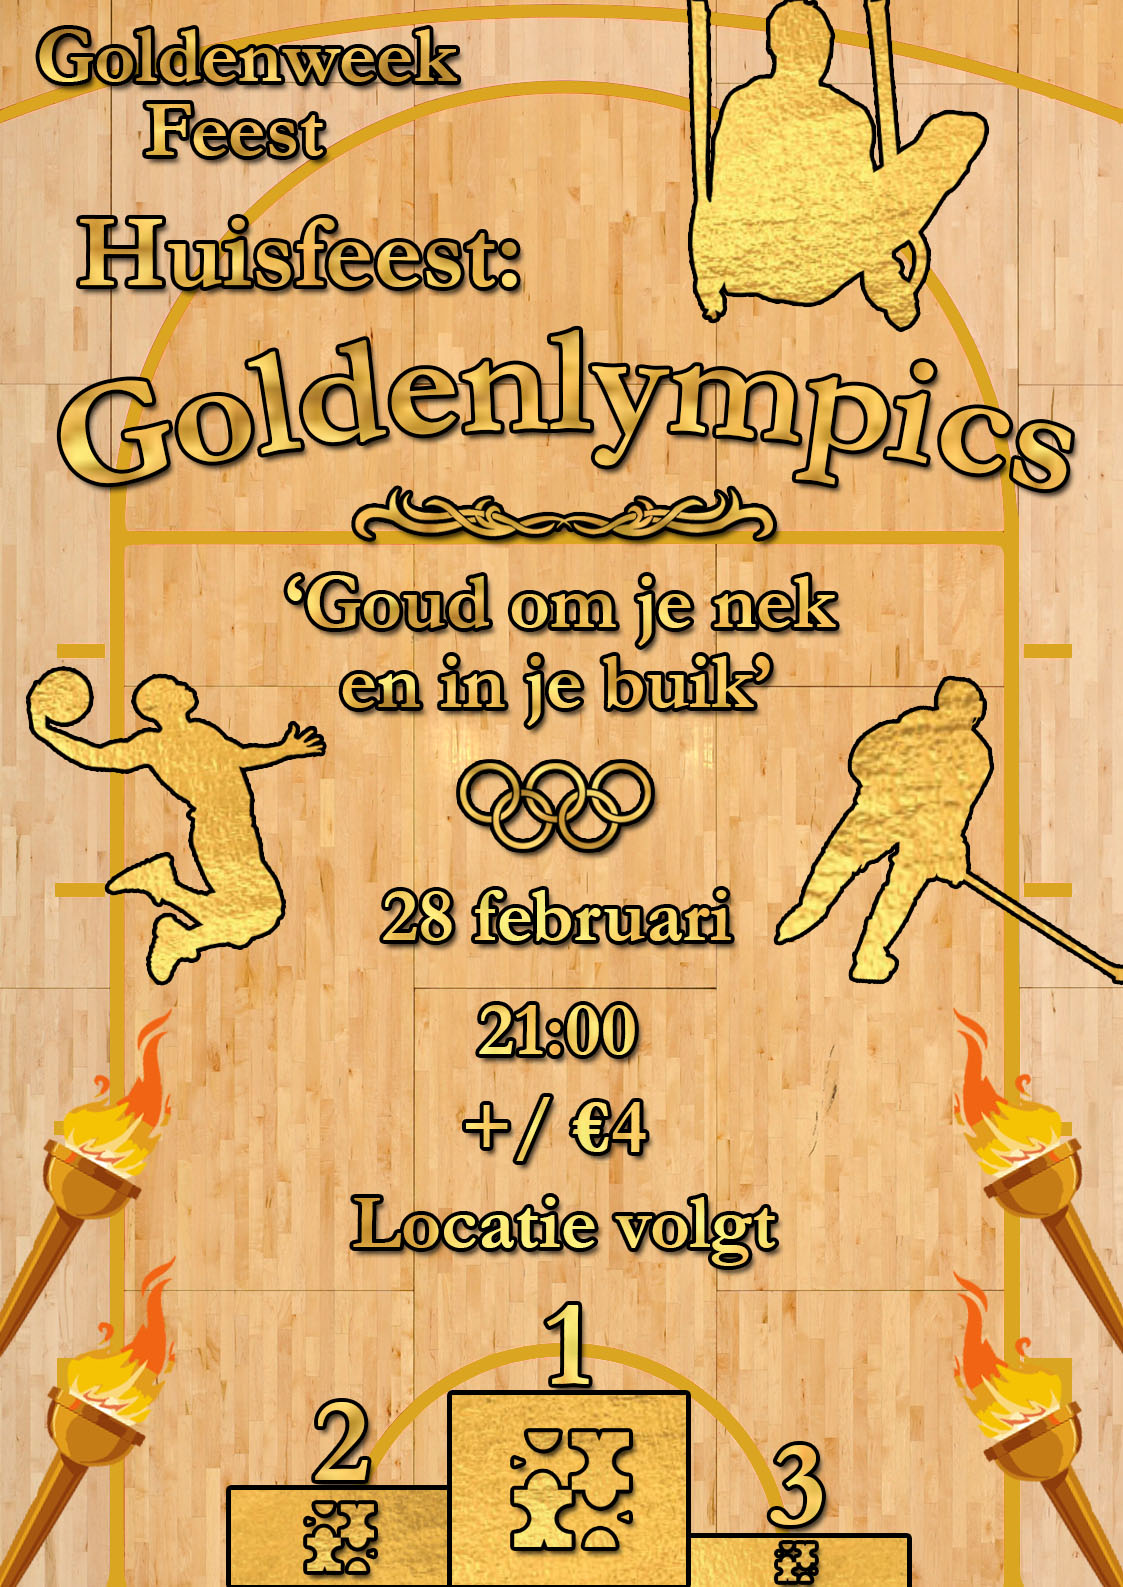 Huisfeest: Goldenlympics